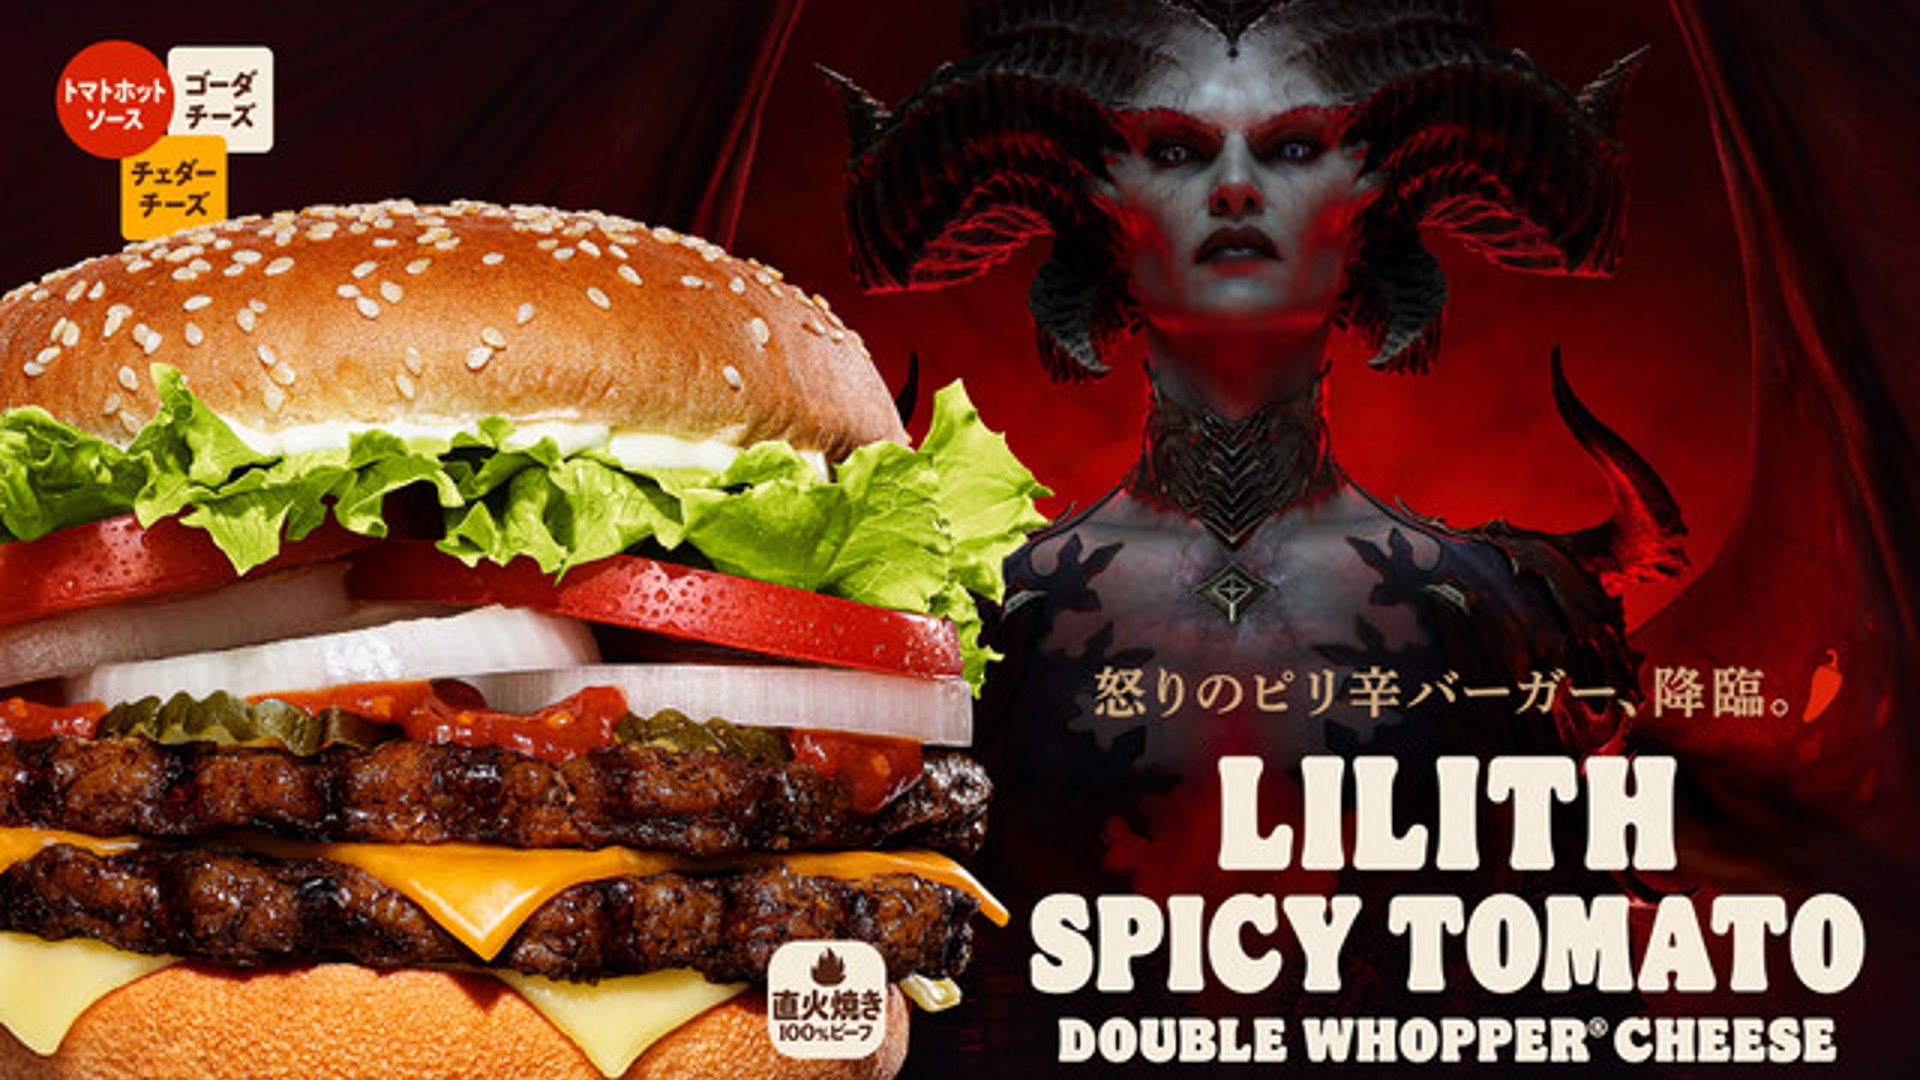 Der Lilith Spicy Tomato Burger ist Teil der neuen Werbekampagne zum Thema Diablo 4